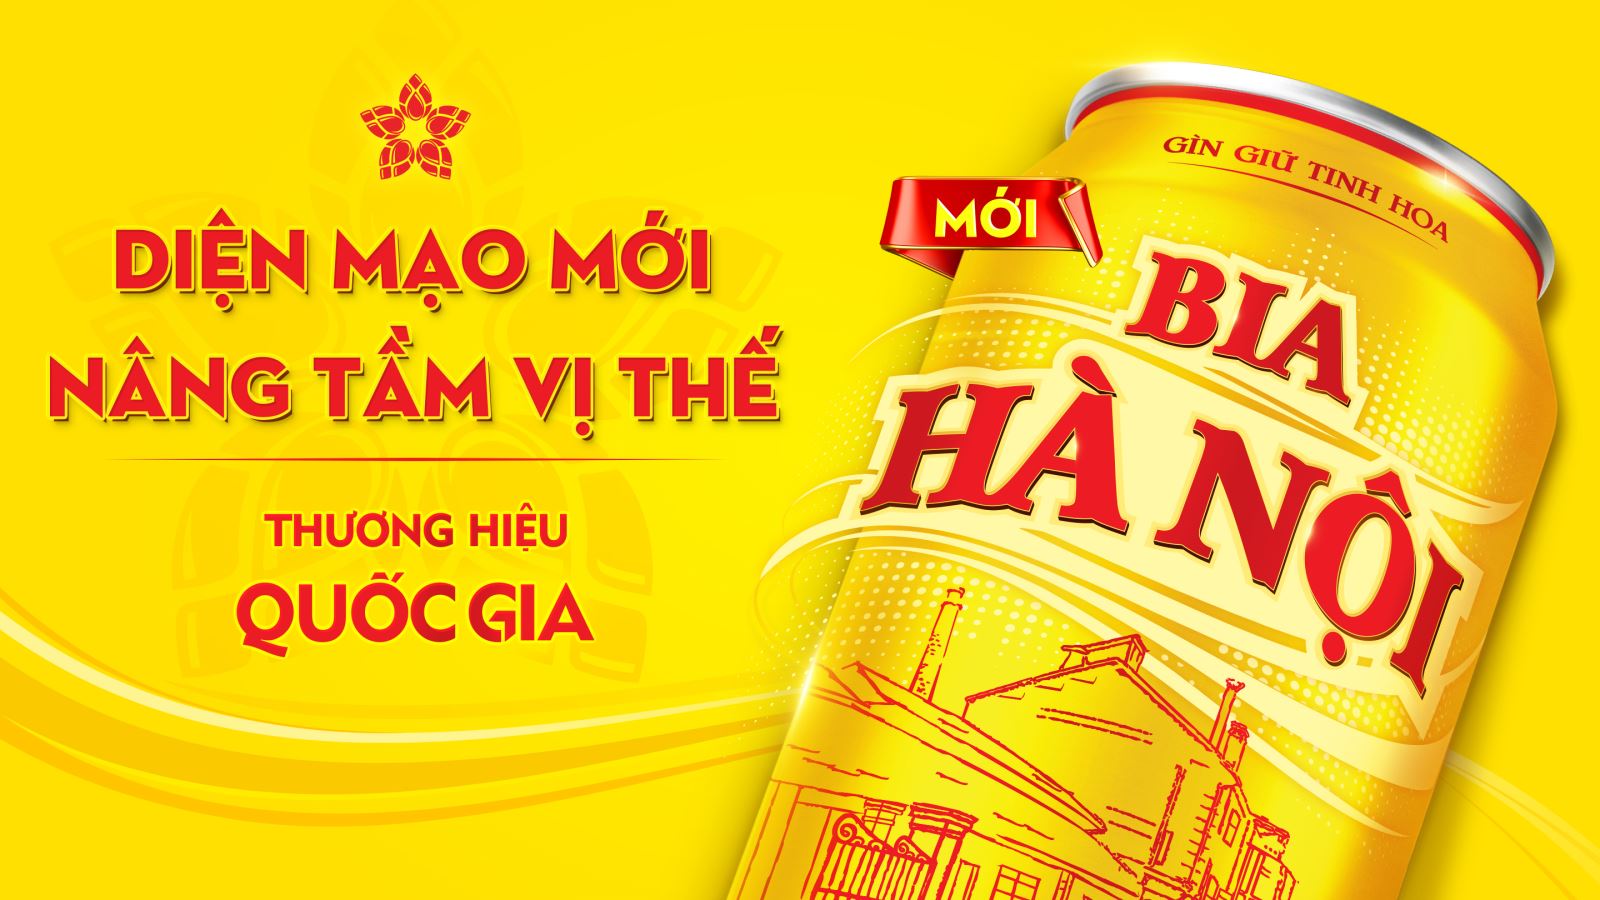 Bia Hà Nội ra mắt nhận diện thương hiệu mới.